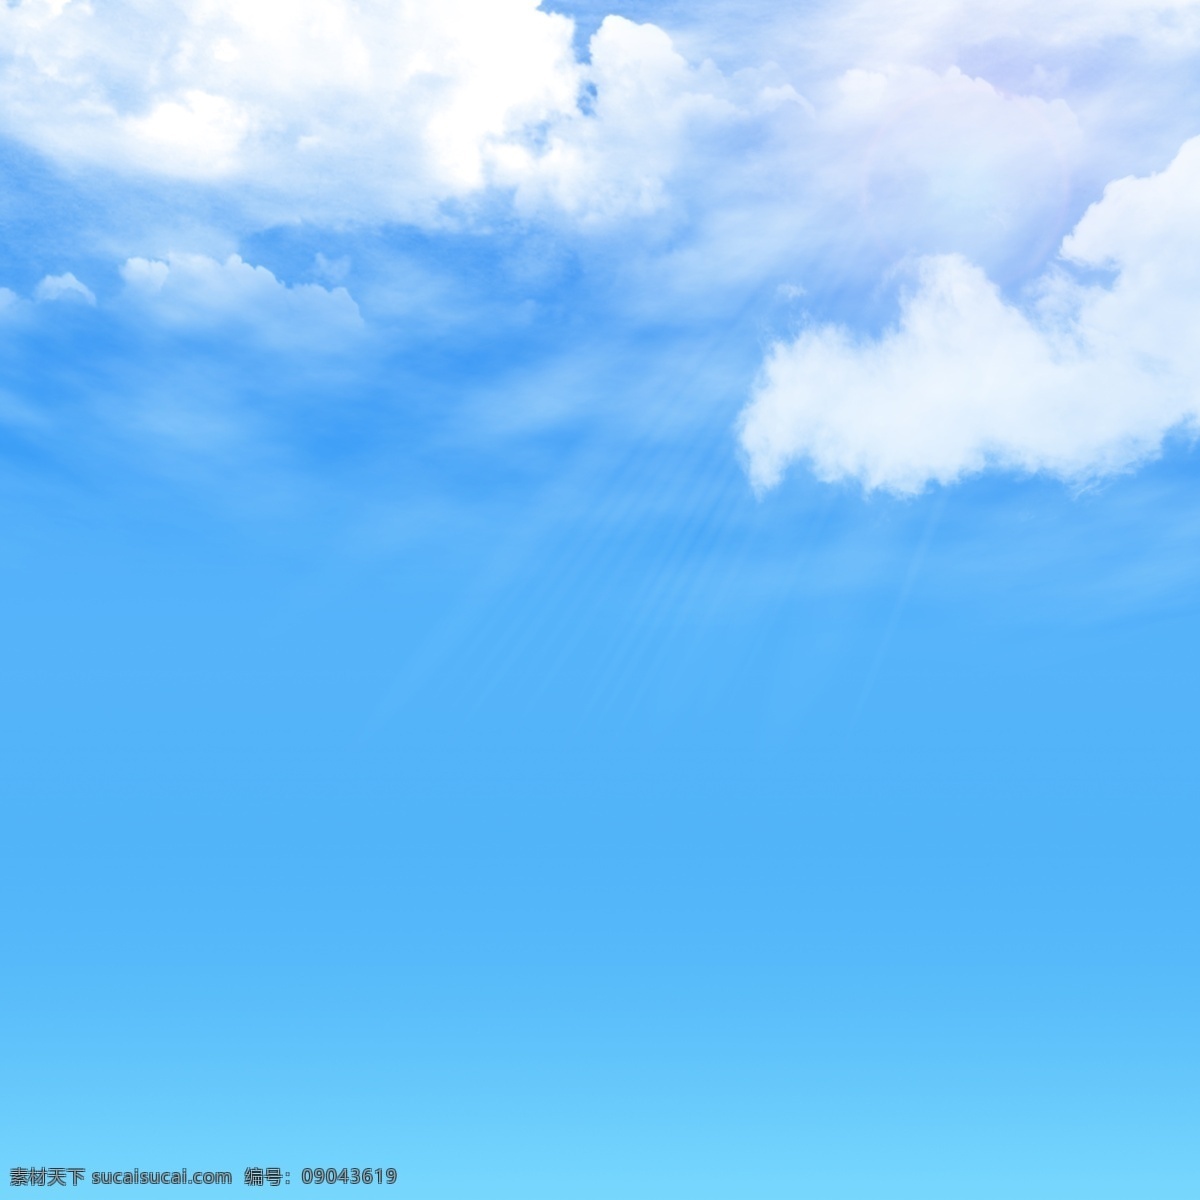 蓝天白云图片 蓝天白云 蓝天白云背景 蓝天白云素材 蓝天白云分层 云朵 白云 天空 自然景观